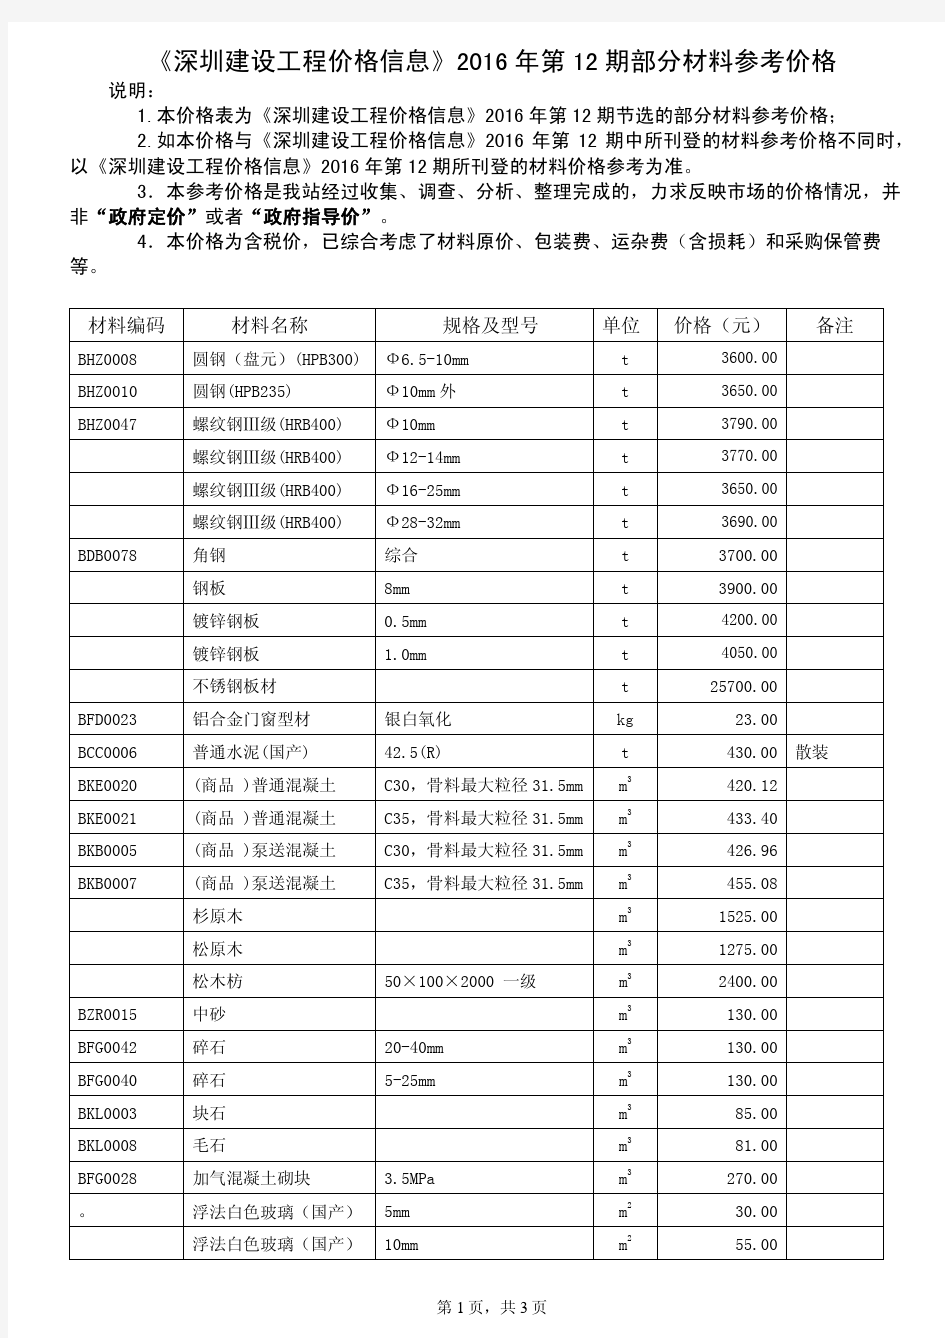 《深圳建设工程价格信息》2016 年第 12 期部分材料参考价格